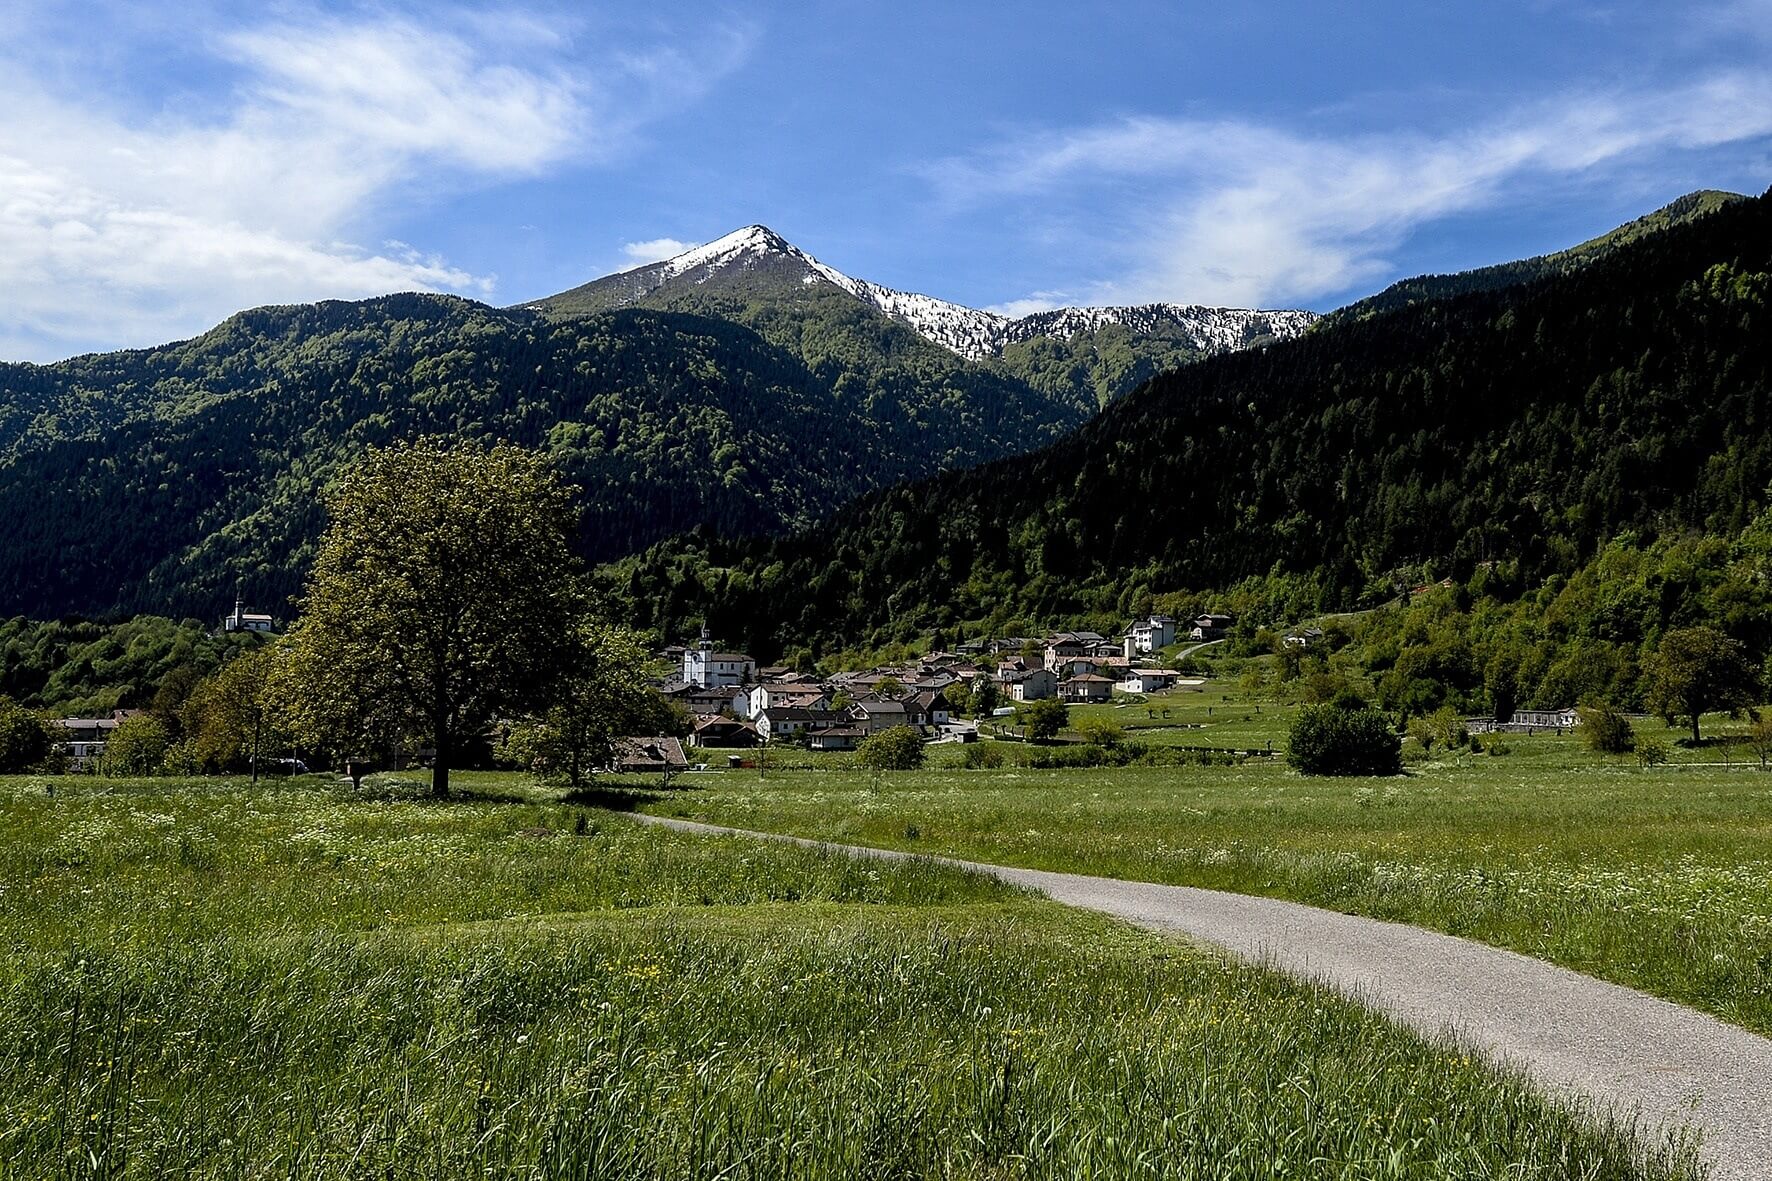 Domenica 9 giugno 2019 a Sutrio, festa golosa fra i monti del Friuli  “I Cjarsòns, la tradizione della Carnia”